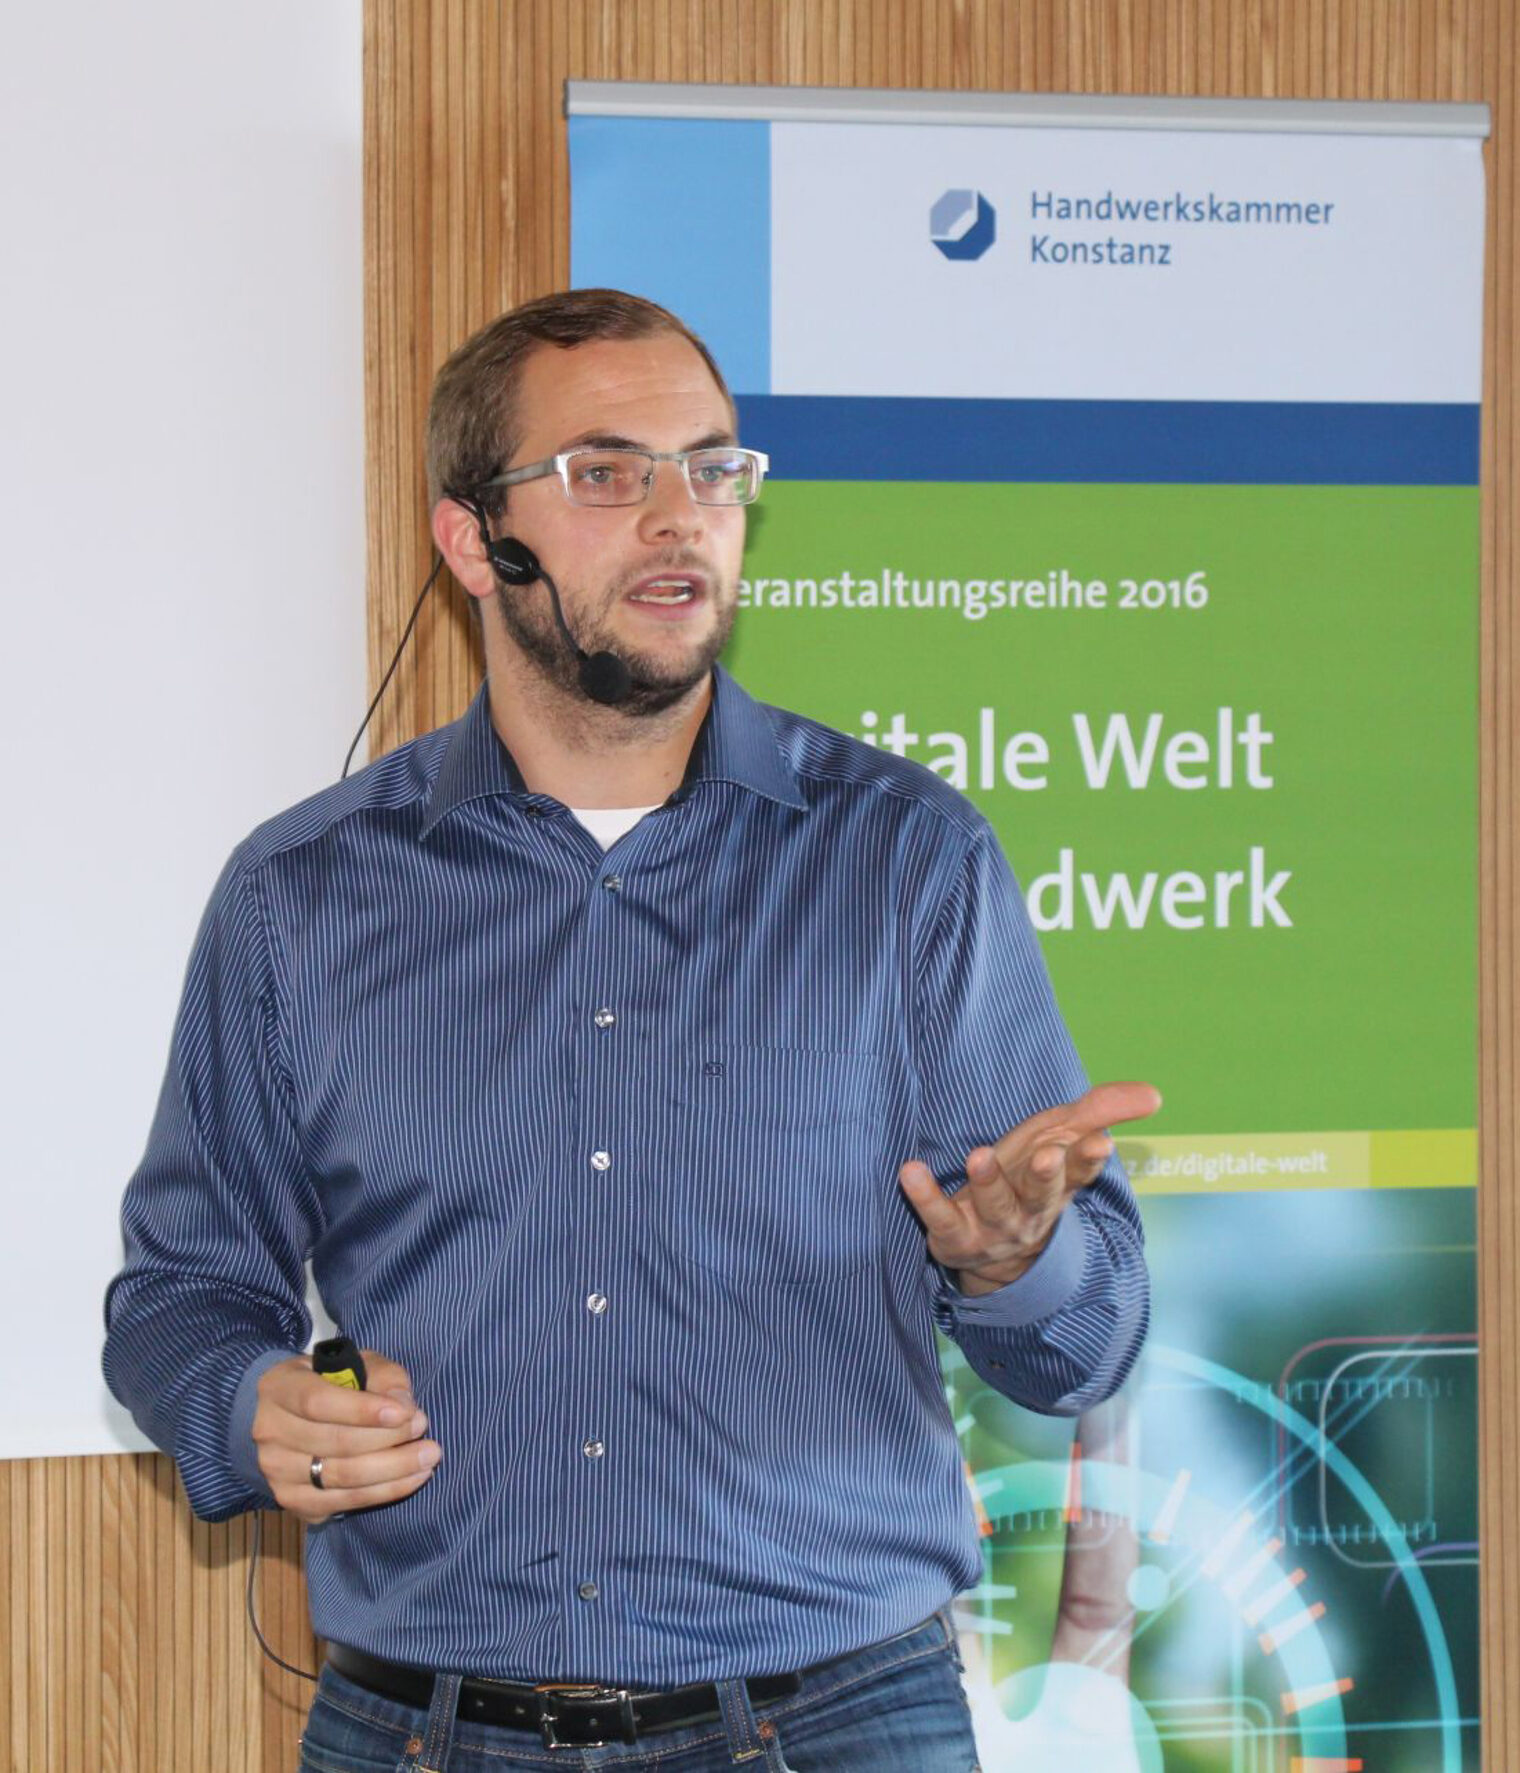 Tobias Fox von der Digital-Agentur Verdure in Stuttgart informiert Handwerker über die Möglichkeiten eines Onlineshops.